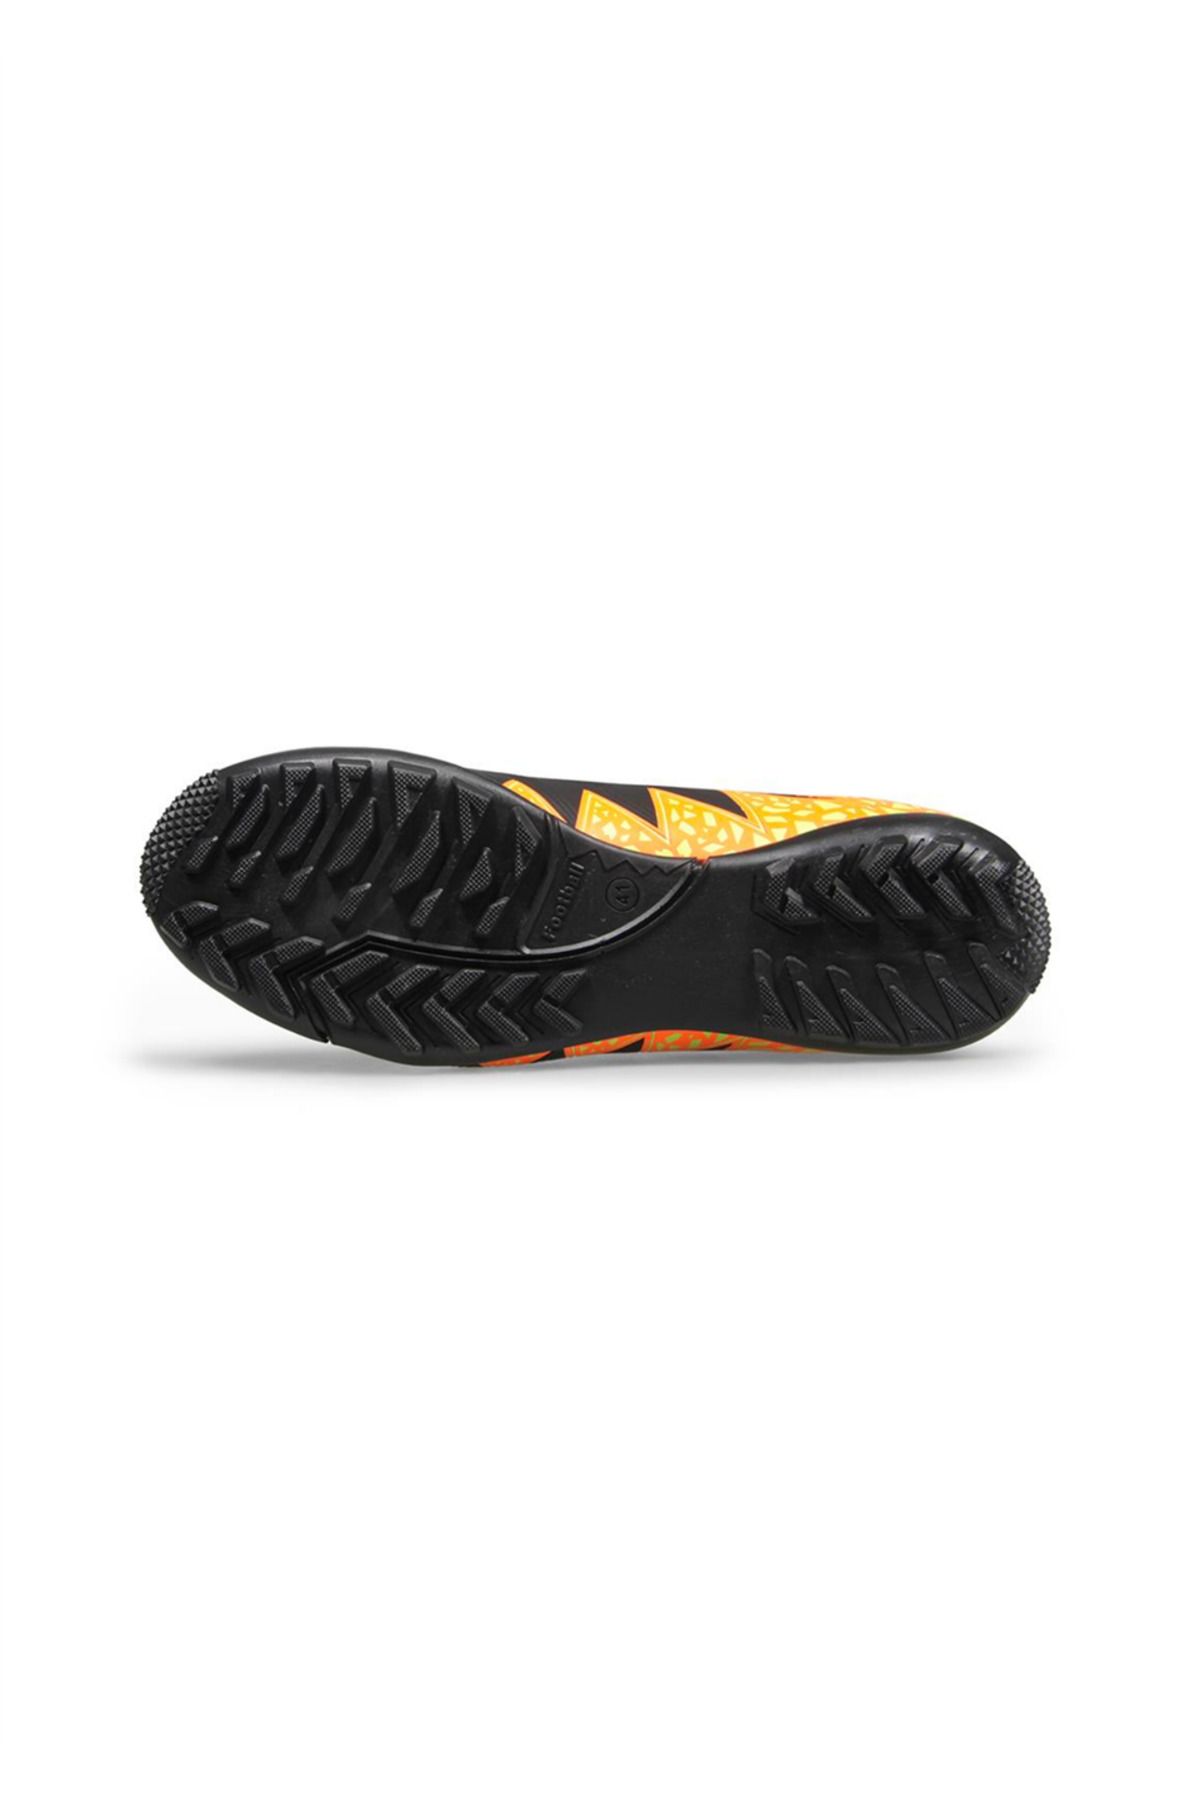 MP 231-1142 gr (36-39) Siyah-turuncu Çoraplı Halı Saha Futbol Ayakkabı